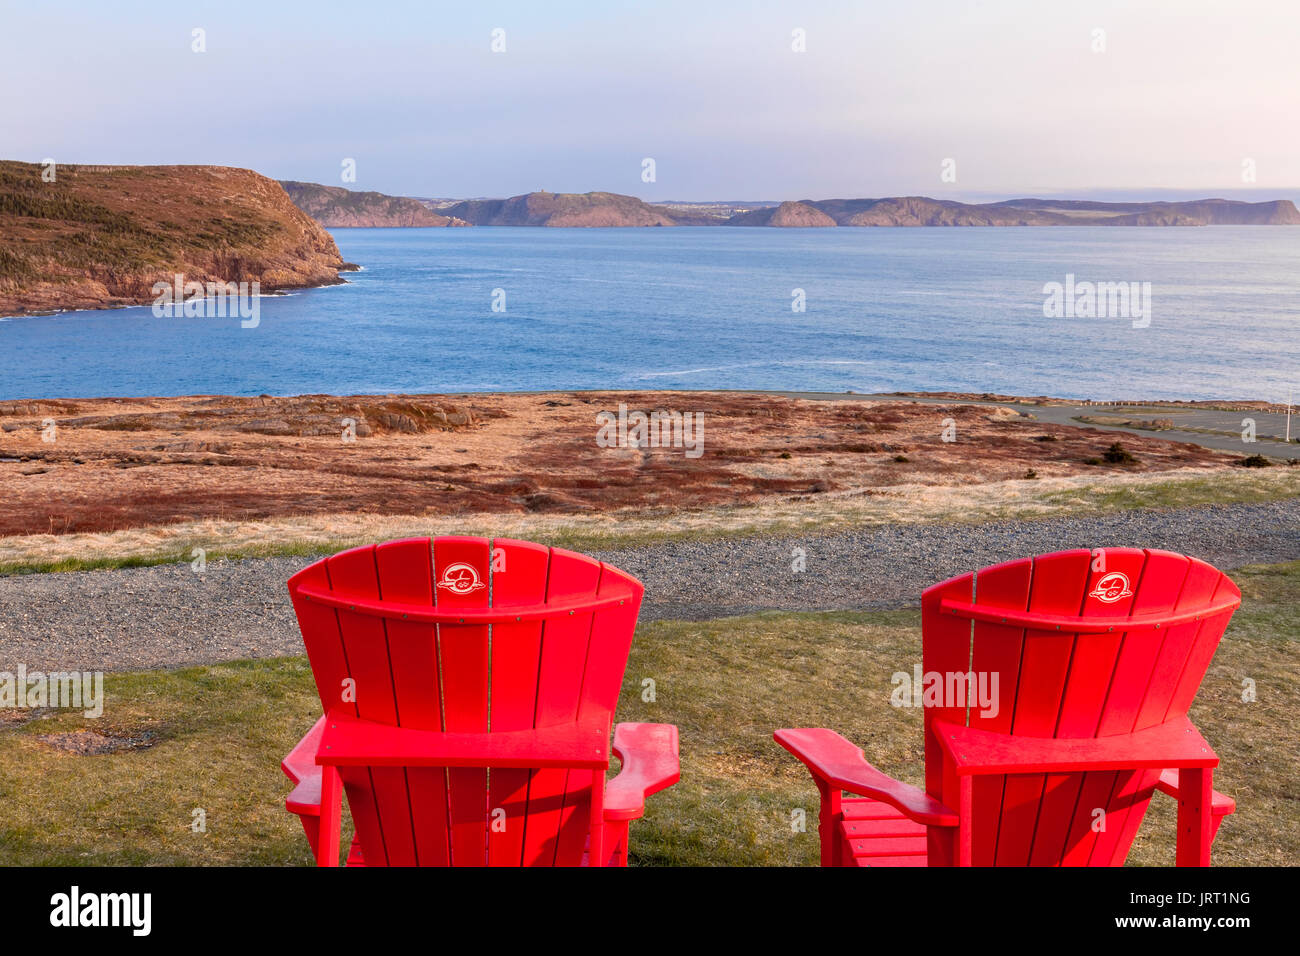 Deux chaises Muskoka rouge avec une vue sur l'océan Atlantique en direction de la ville de Saint John's au lieu historique national du Canada. Banque D'Images